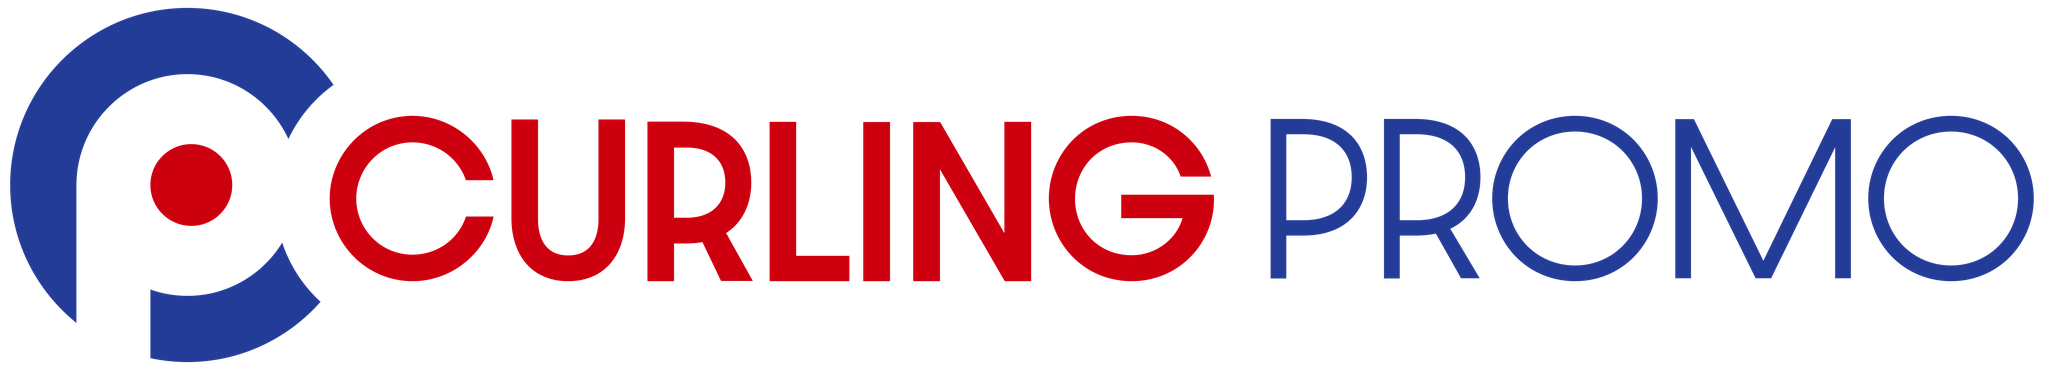 CurlingPromo logo